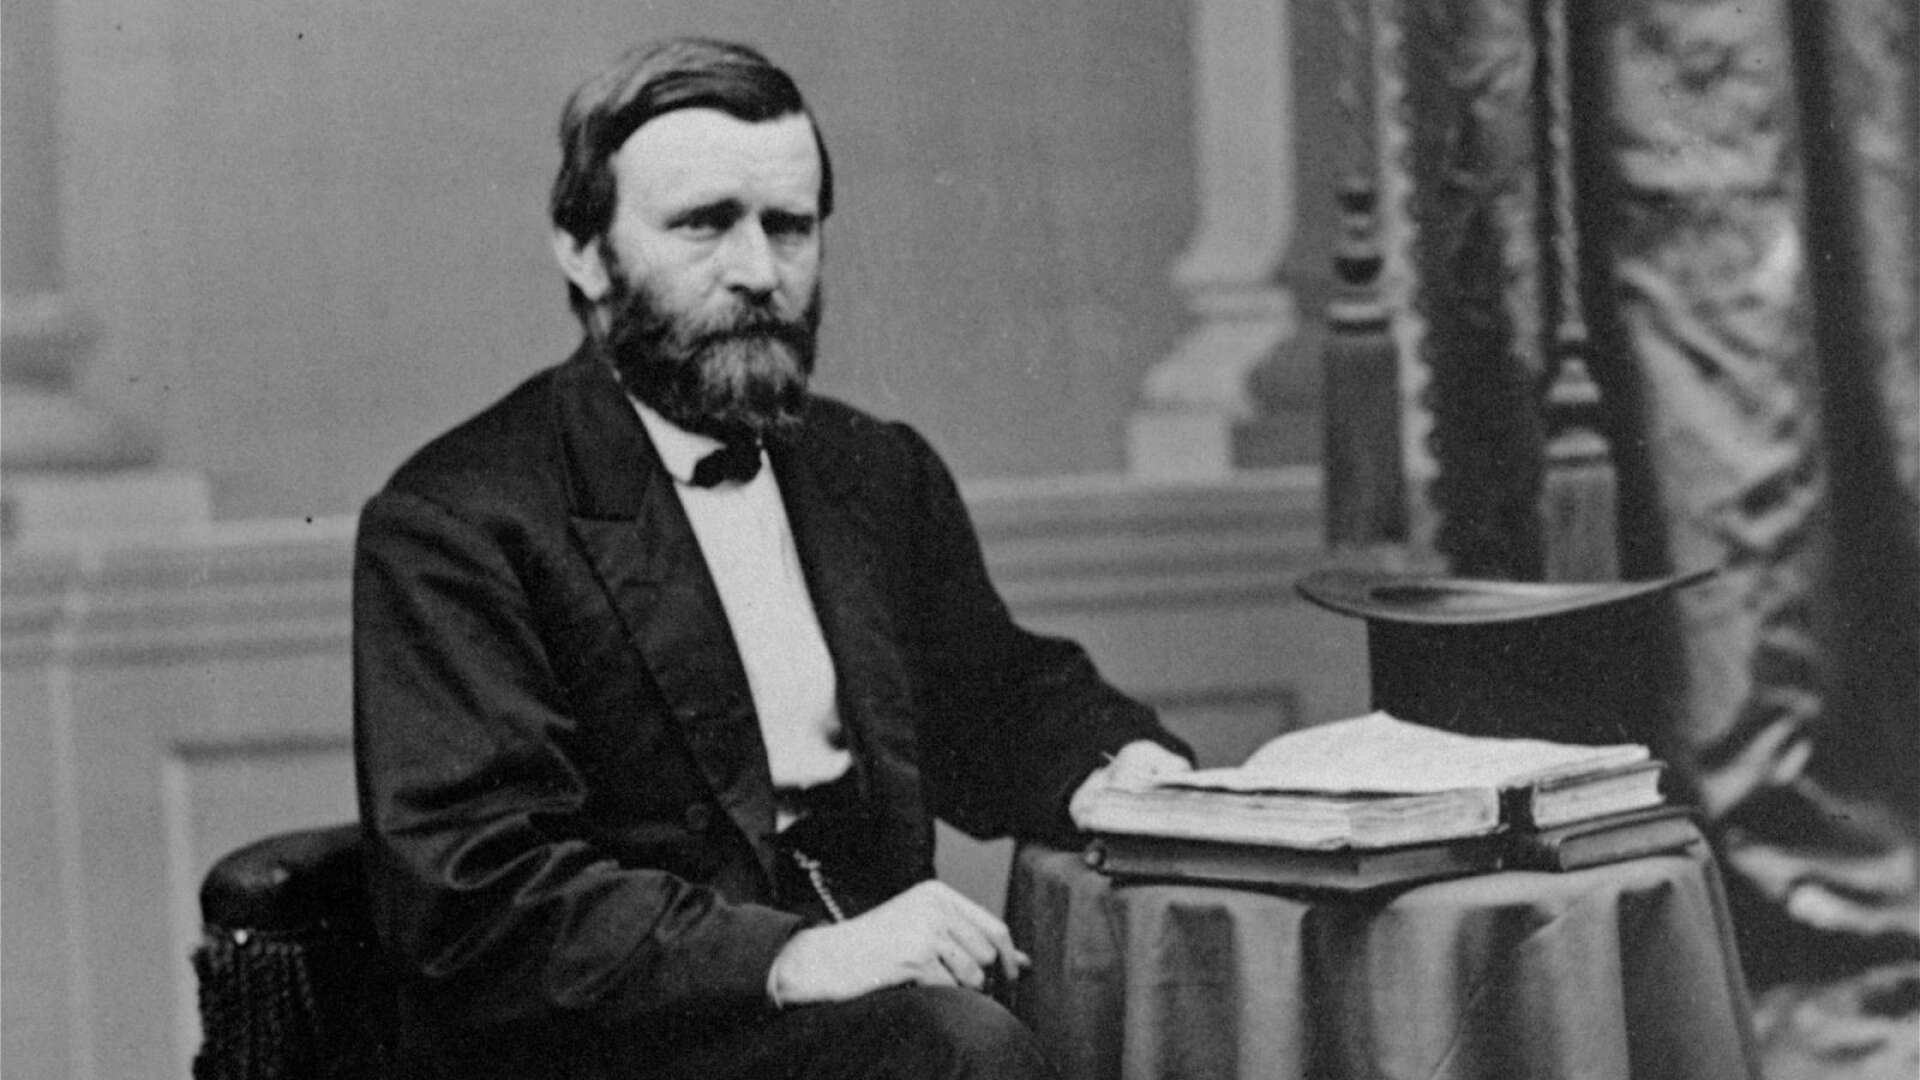 Ordet lobbyist kommer ifrån att USA:s president under 1880-talet, Ulysses S Grant, enligt berättelsen brukade gå till hotellbaren på Hotell Willard för att koppla av i lobbyn, skriver Pär Holmgren.